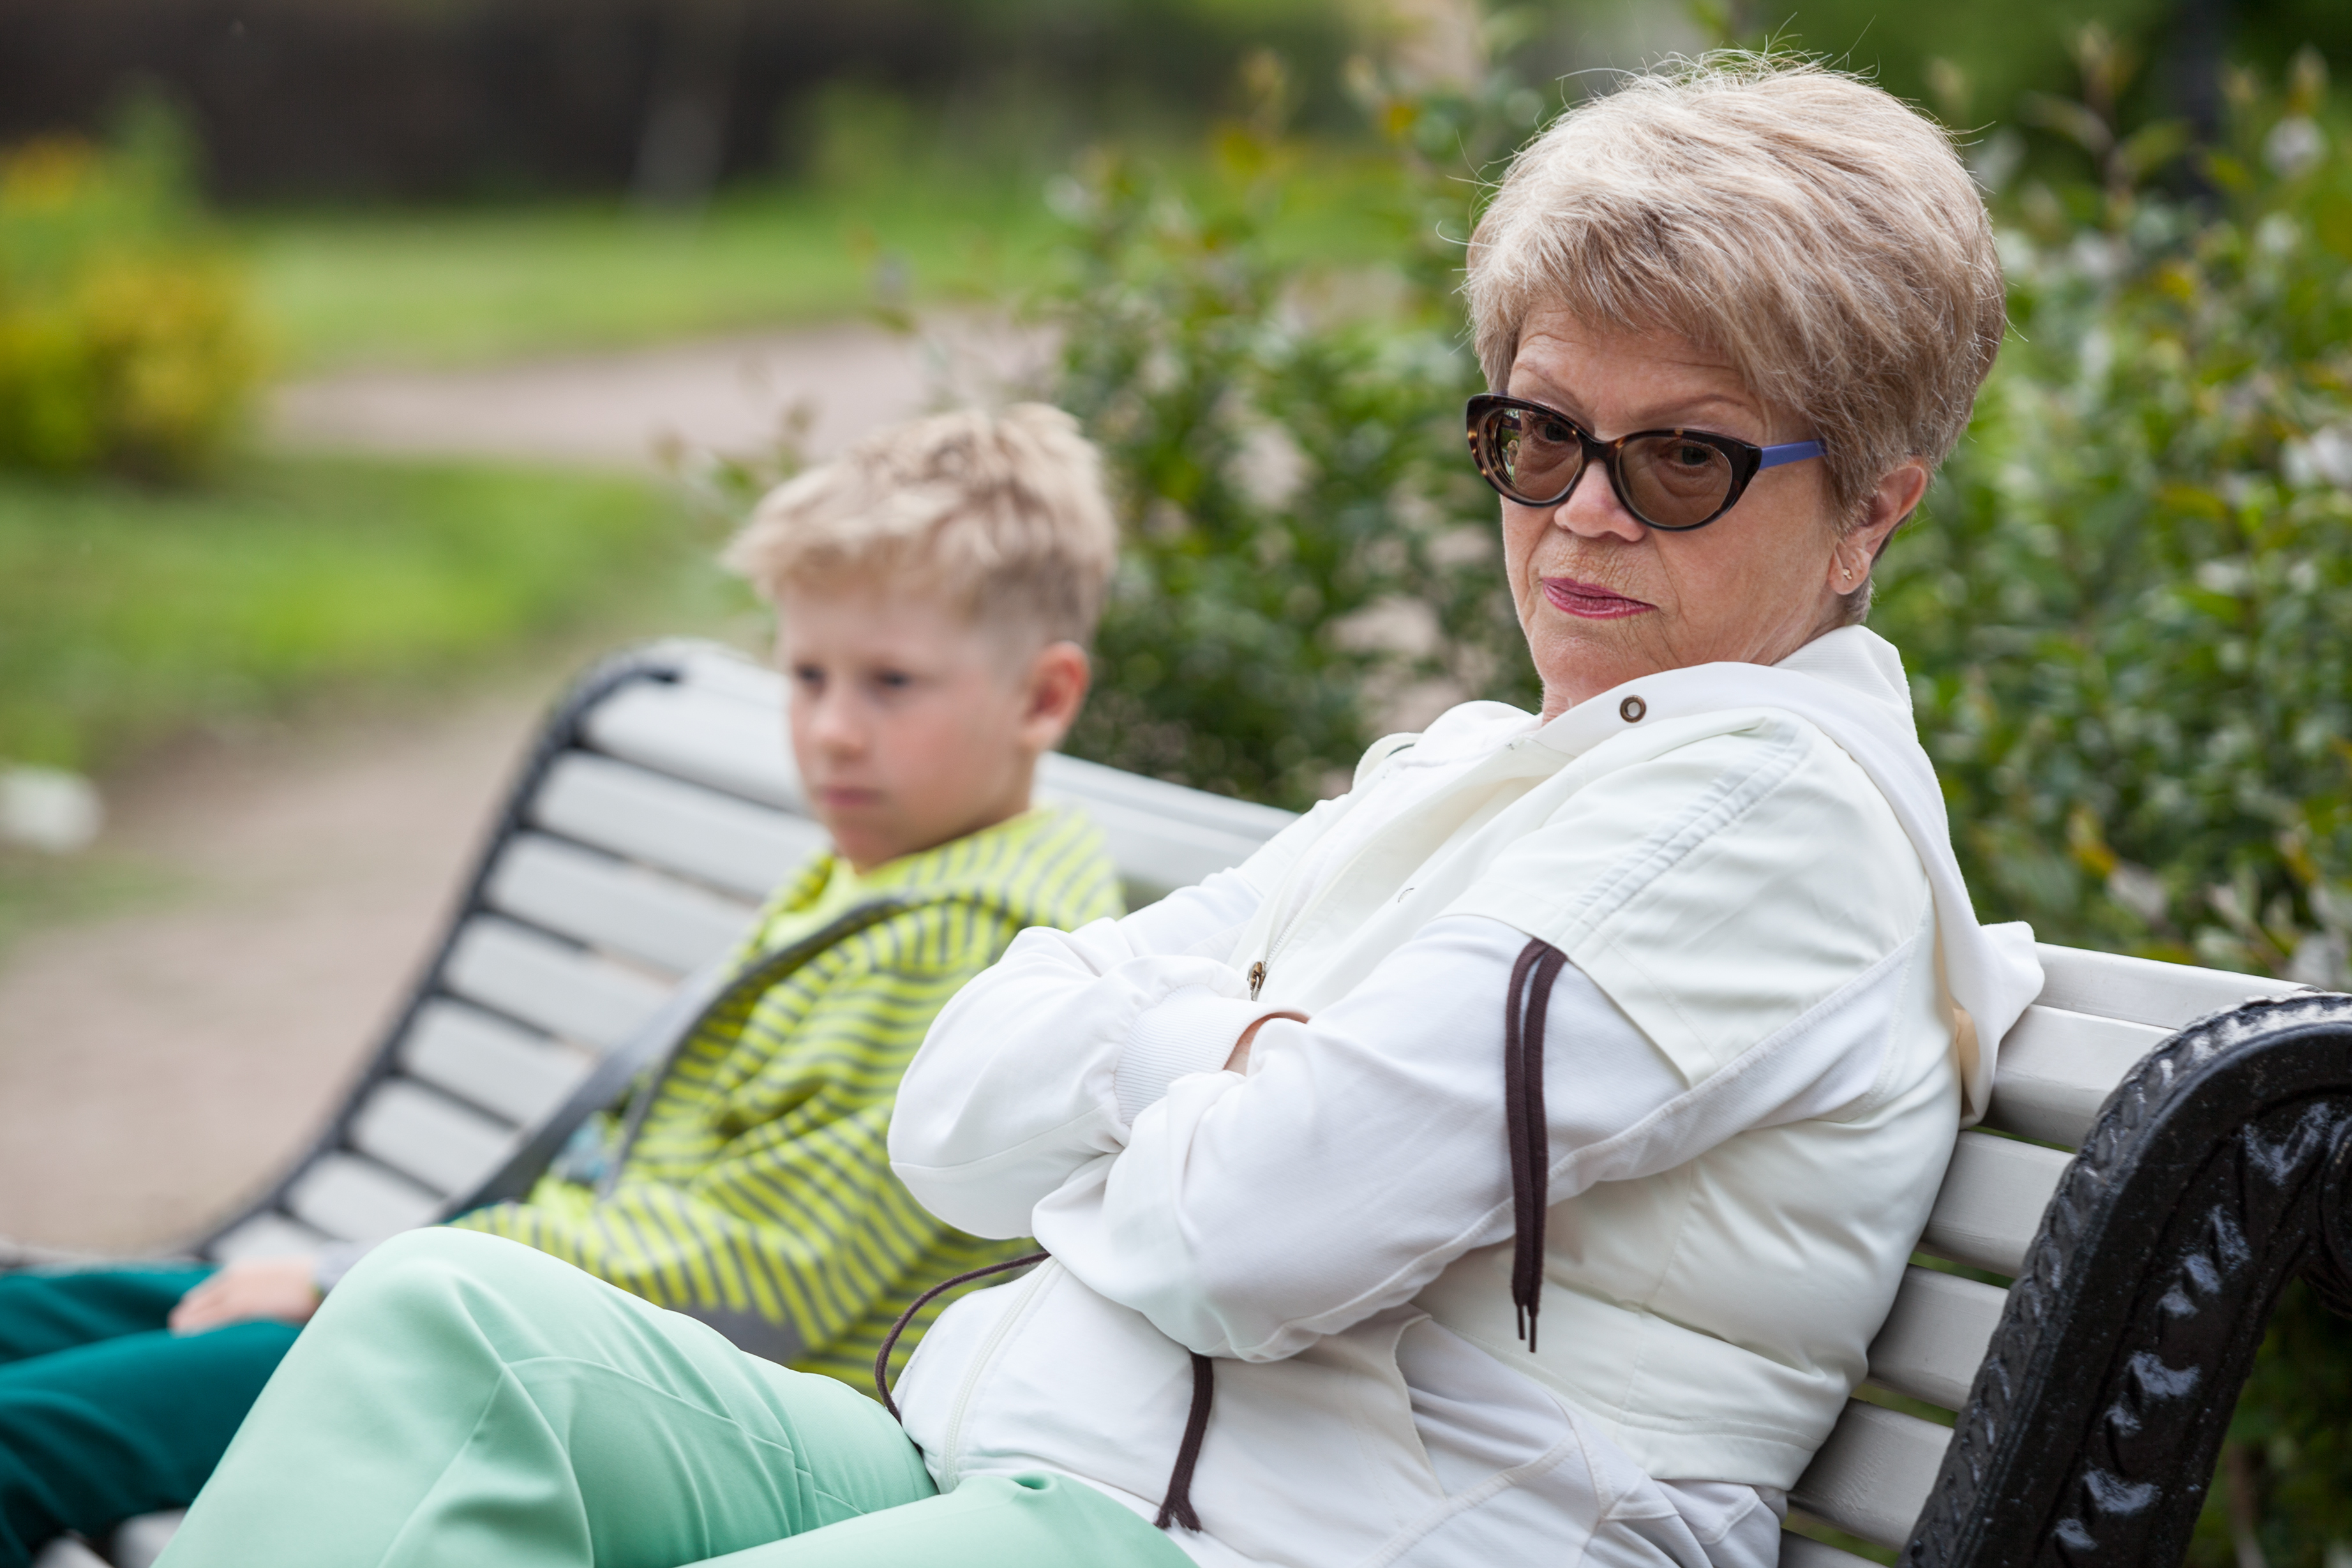 Mujer mayor ignorando a un chico joven en un banco | Fuente: Shutterstock